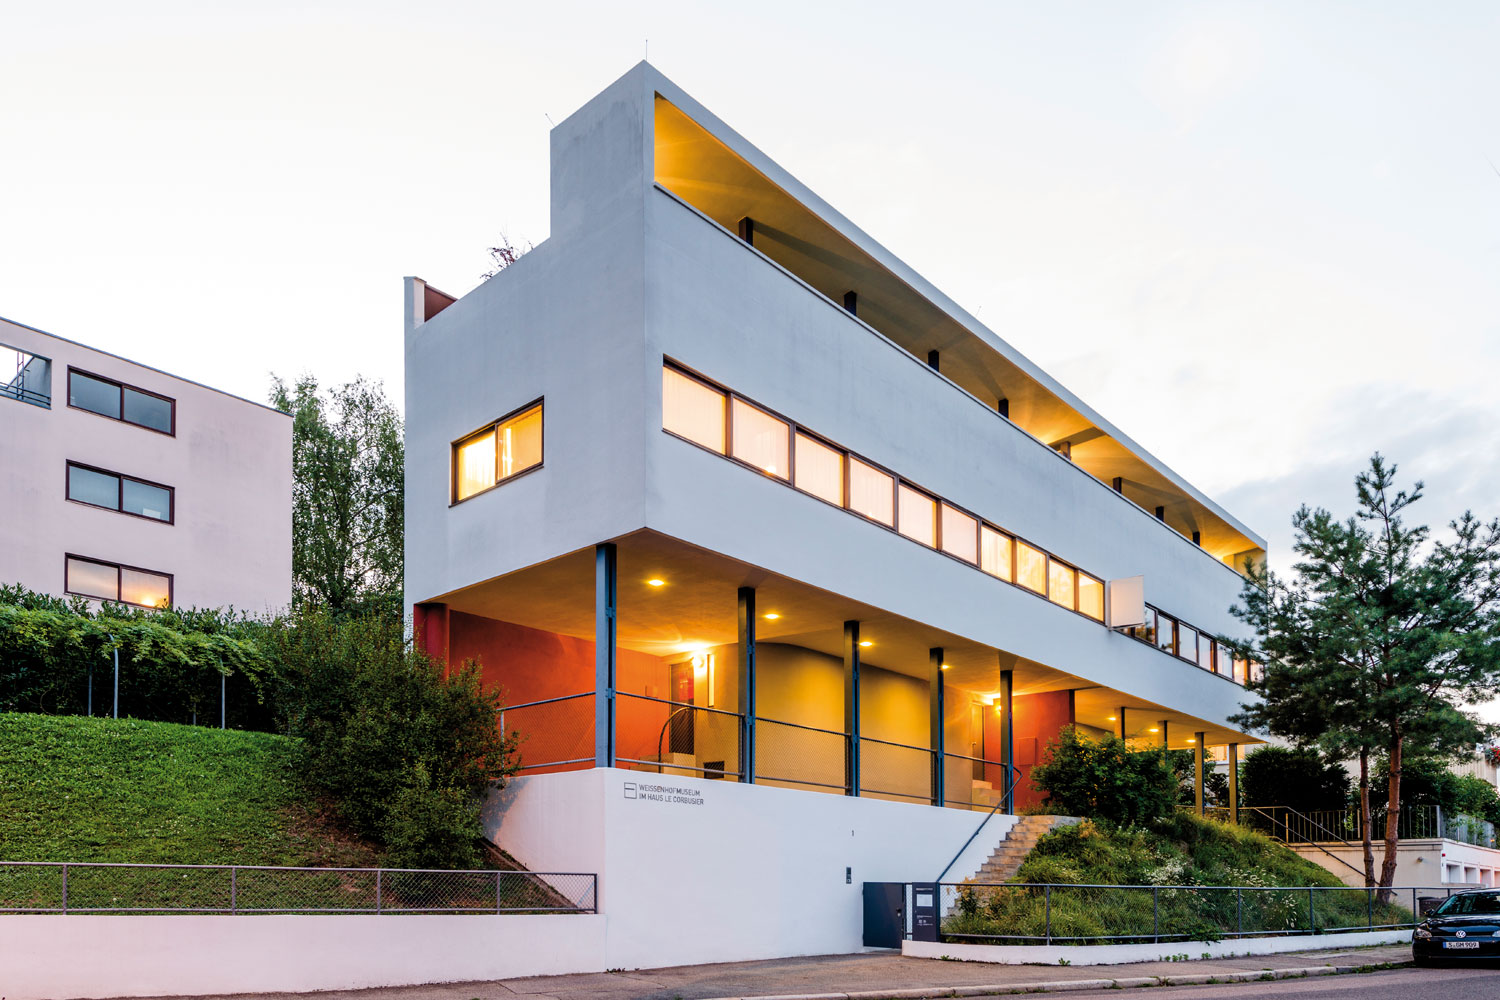 UNESCO-Welterbe und Aushängeschild der Weissenhofsiedlung: Das Doppelwohnhaus entworfen vom Architekten Le Corbusier. |© TMBW, Gregor Lengler